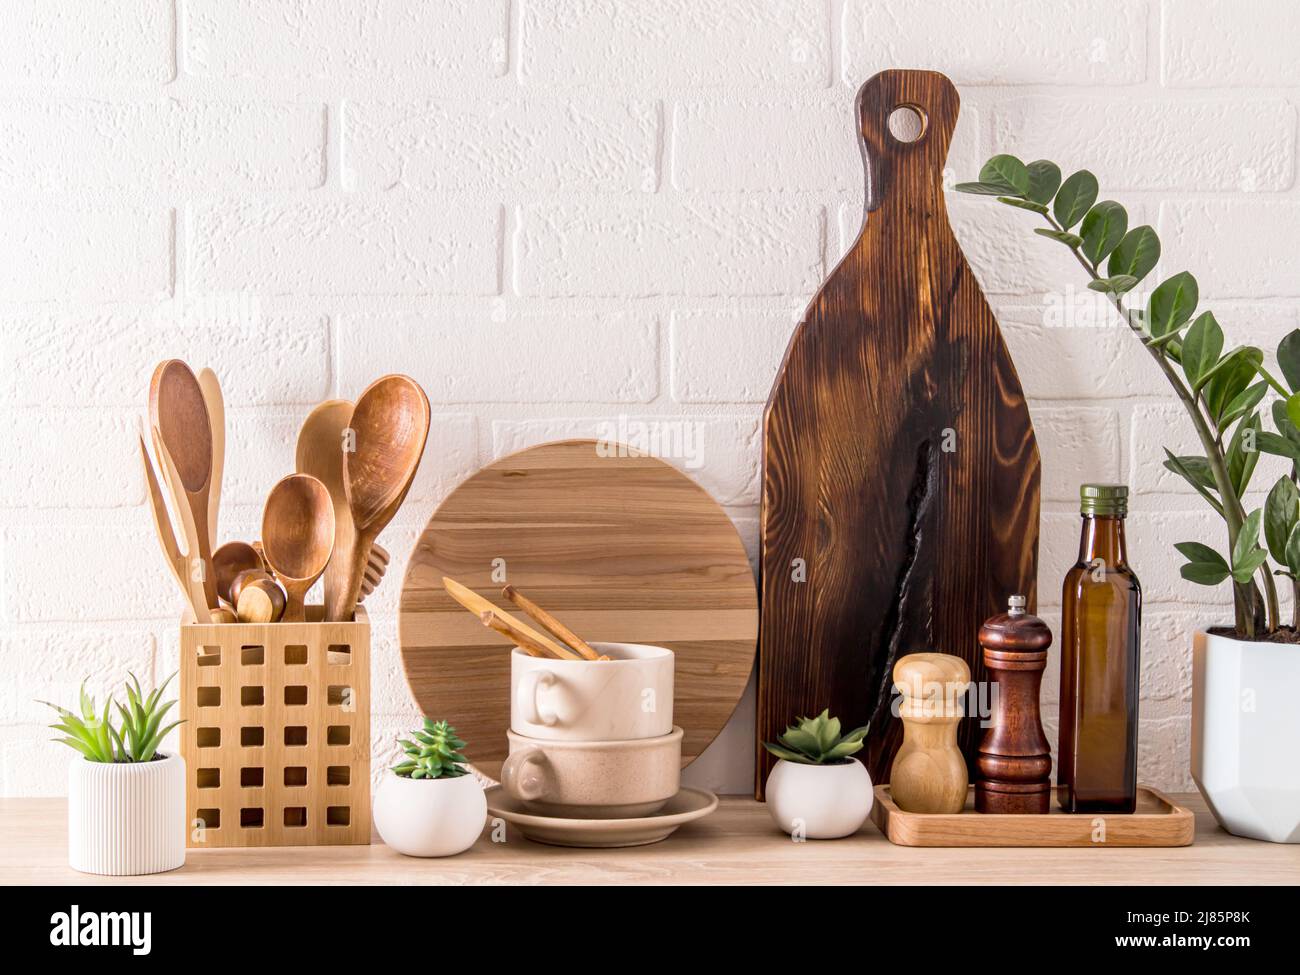 Verschiedene Arten von Küchenutensilien, Holzbretter, Gewürzbehälter, grüne Topfpflanze auf einer modernen Arbeitsplatte. Modische Küchenausstattung Stockfoto